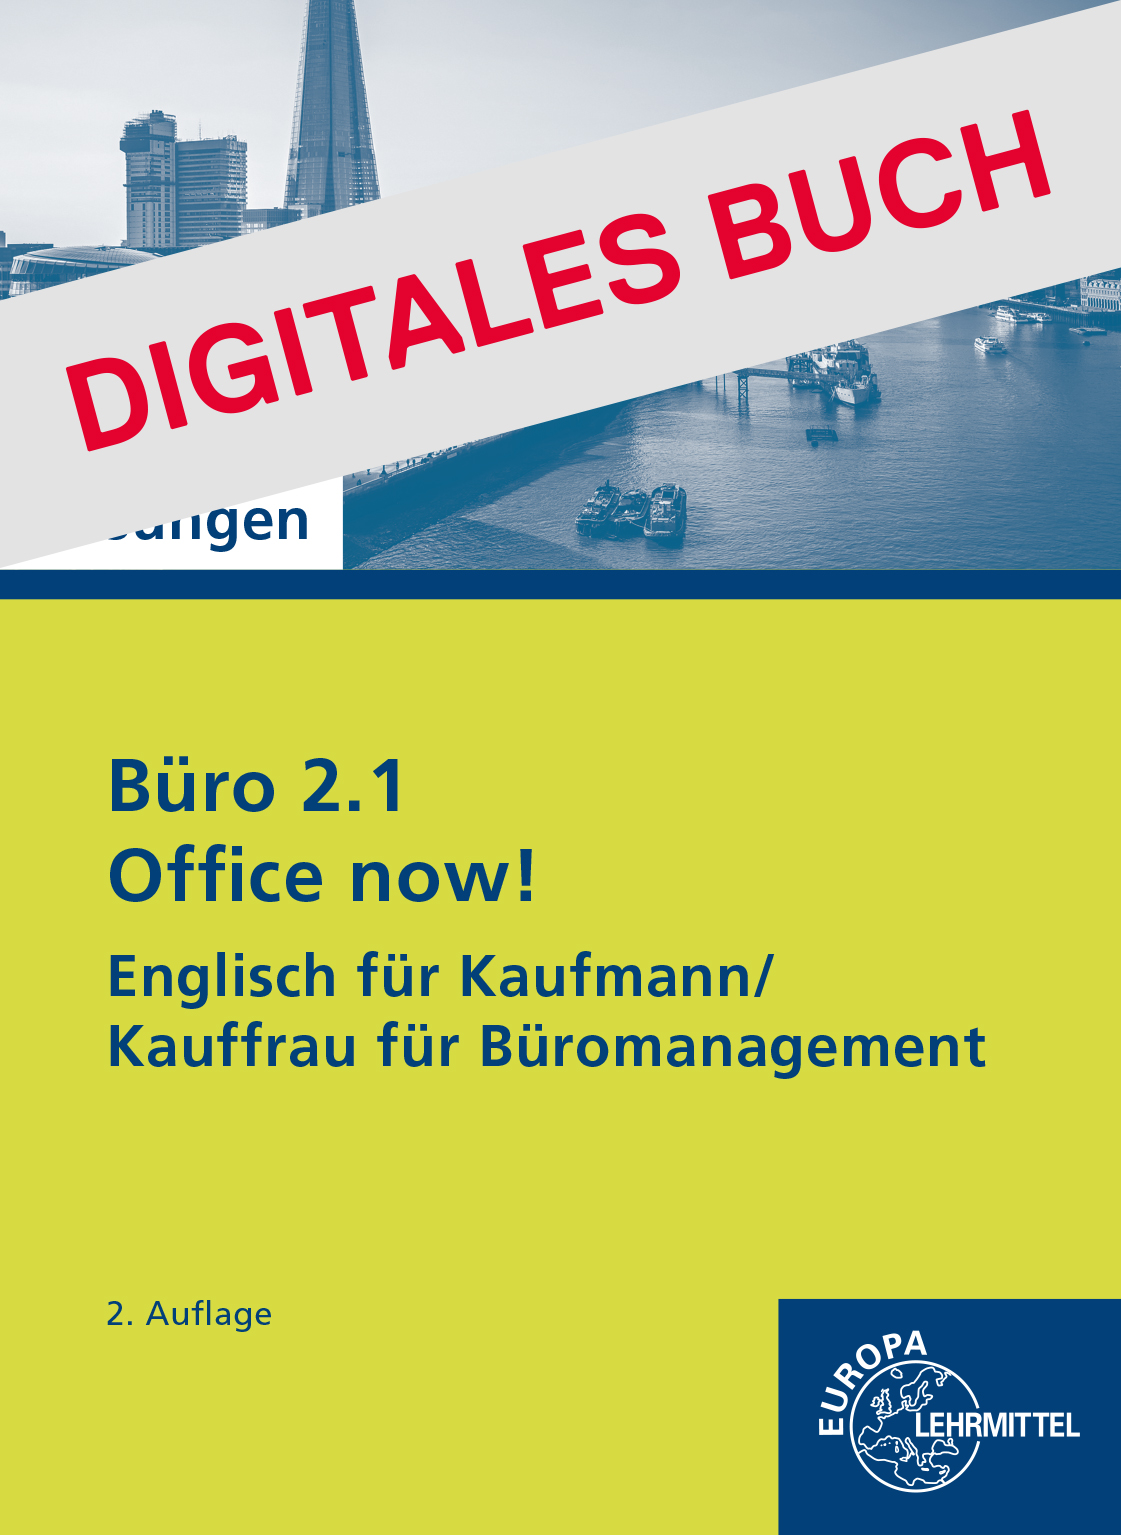 Lösungen Office now! Englisch für Kaufleute f. Büromanagement digitales Buch